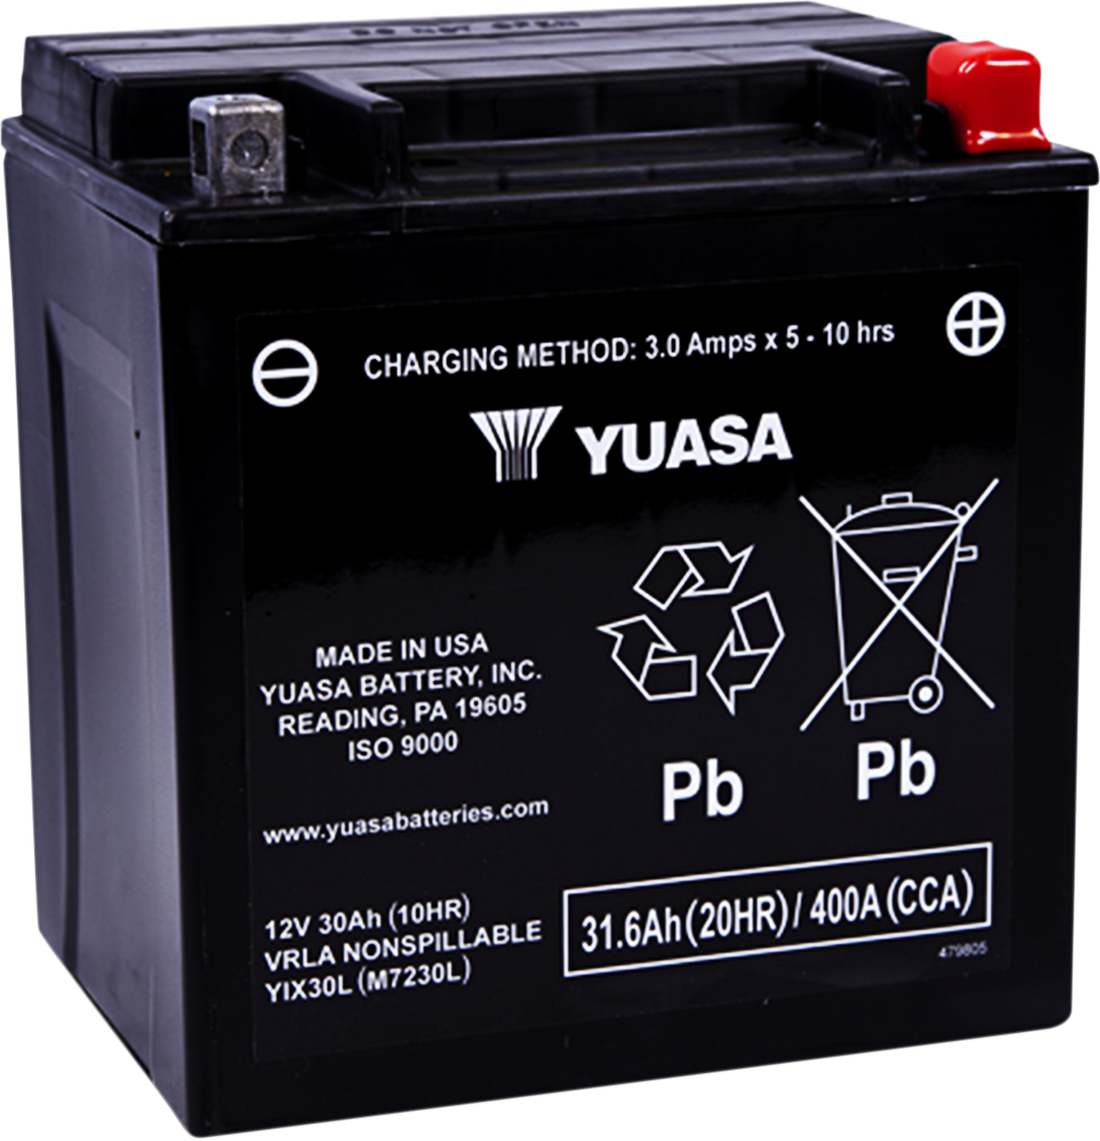 YIX30L - YUASA AGM Battery - YIX30L YUAM7230L